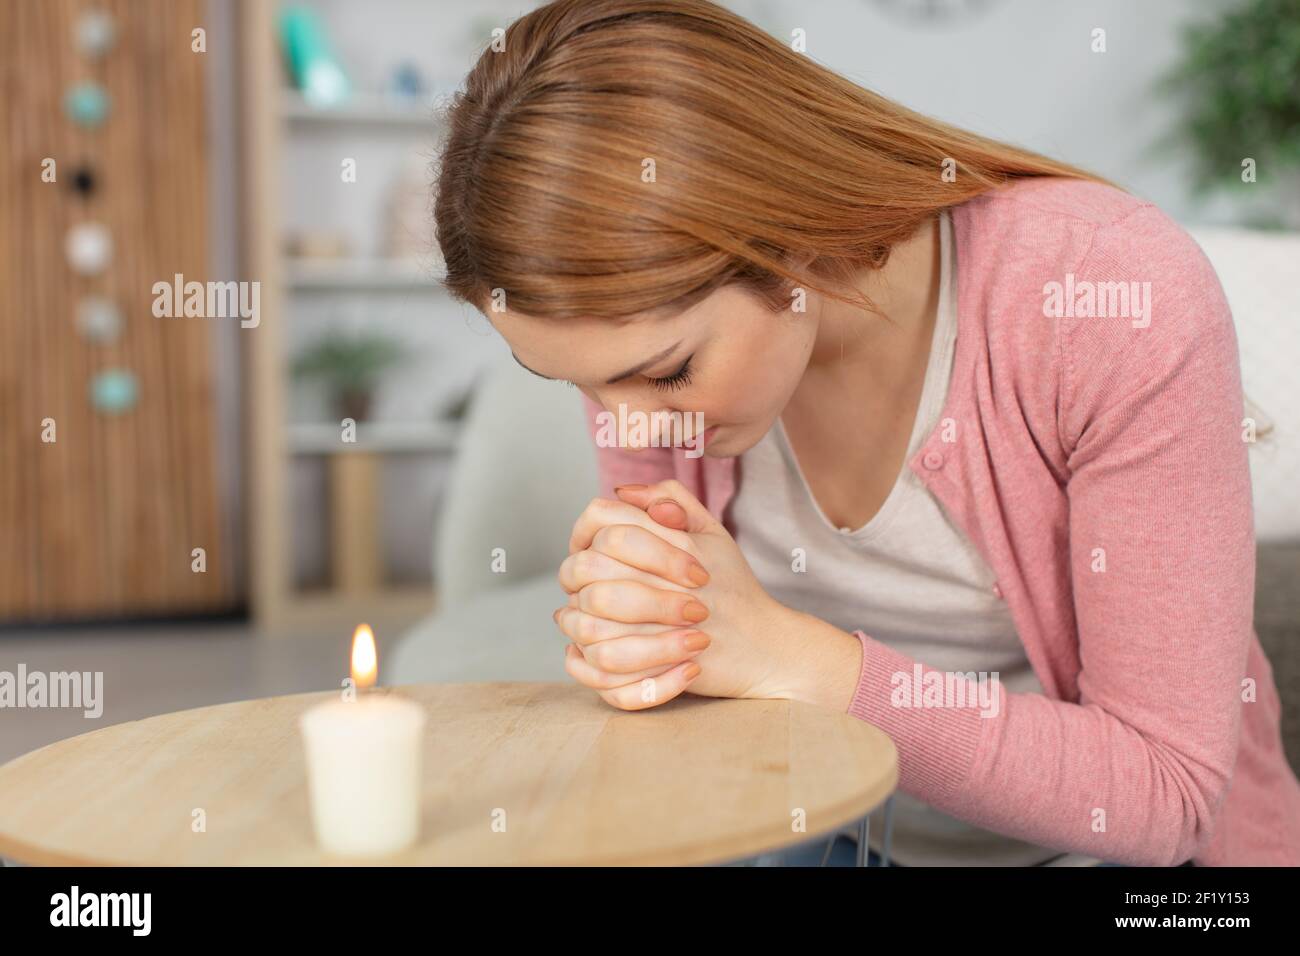 woman praying depressed at home Stock Photo